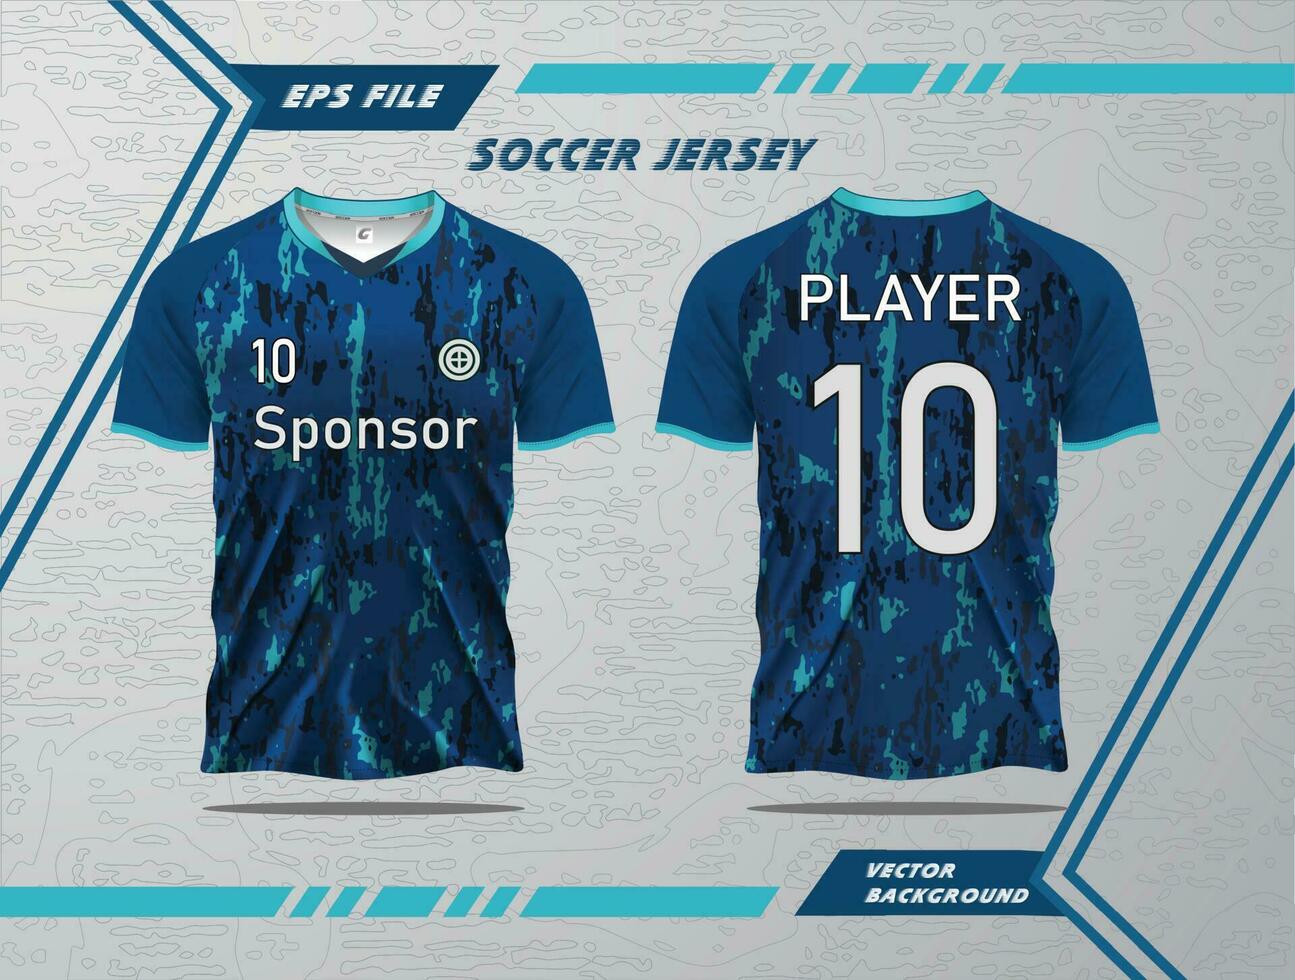 moderno fútbol jersey fútbol americano deporte t camisa diseño adecuado para carreras, fútbol, juego de azar y mi Deportes Pro vector y doble cara Bosquejo